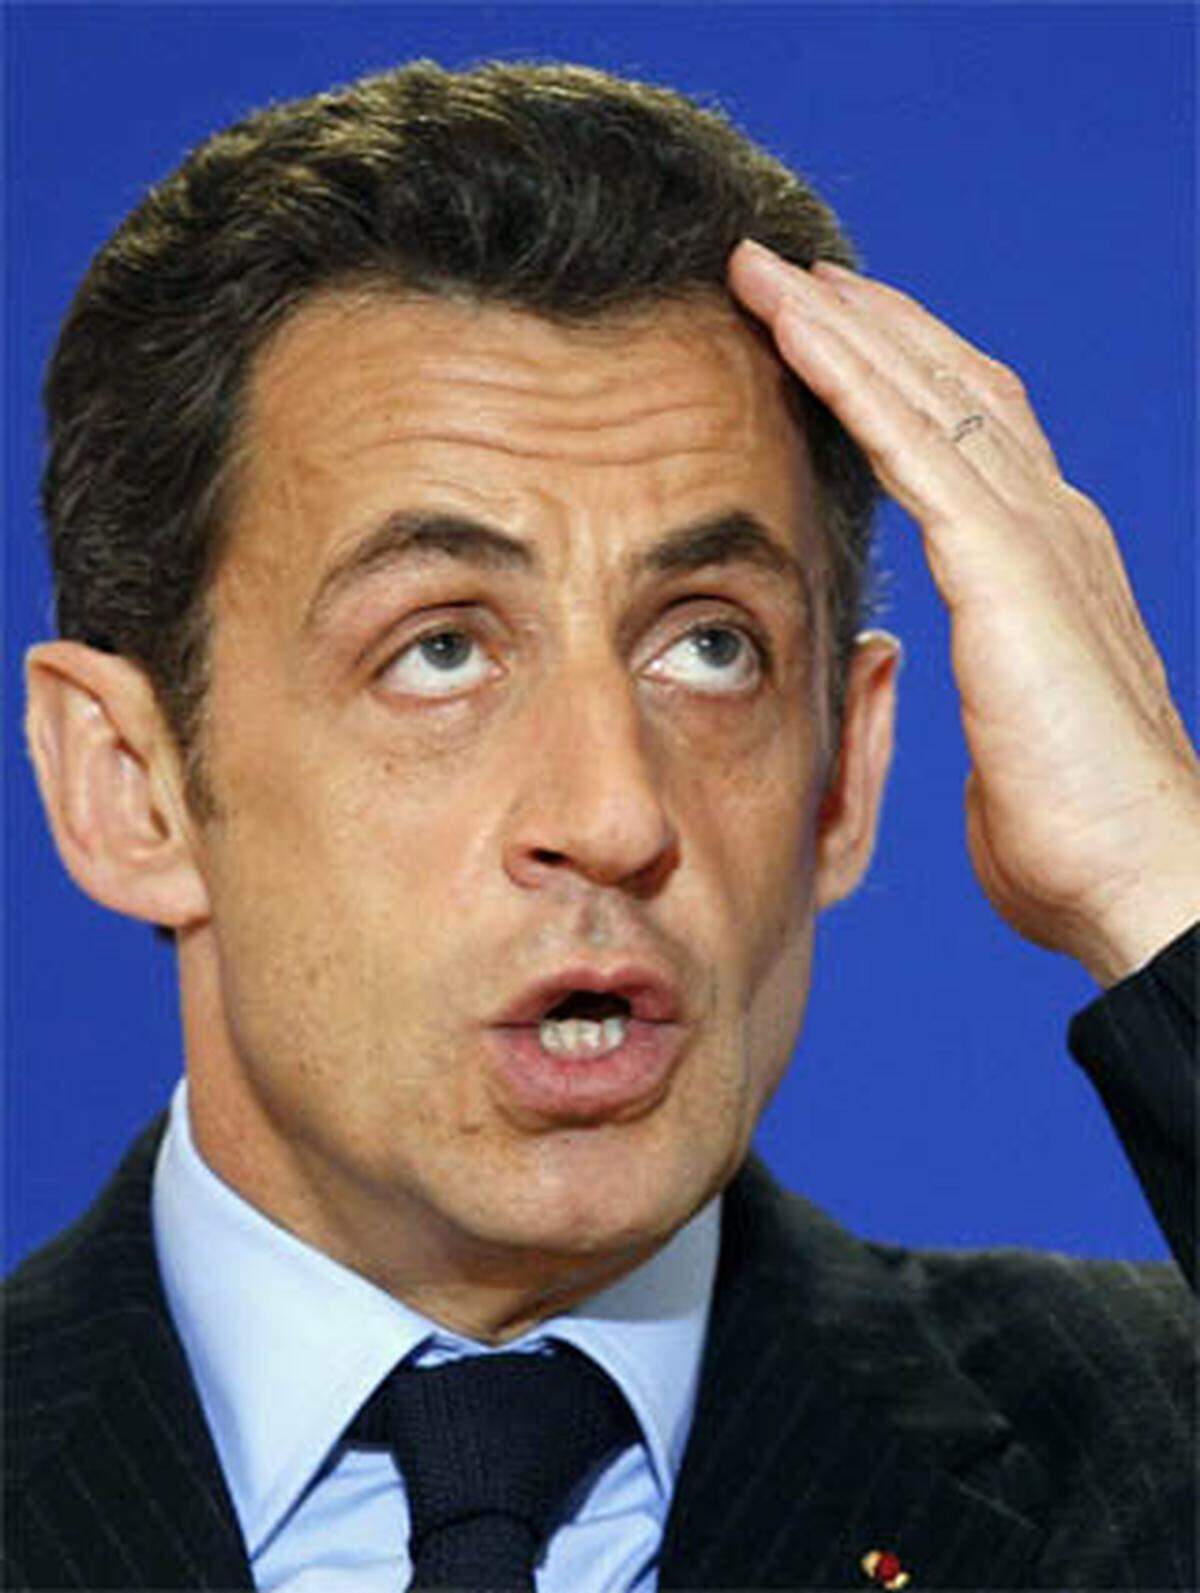 Frankreichs Ex-Präsident Nicolas Sarkozy ließ sich während seines Wahlkampfs für insgesamt 34.455 Euro schminken. Das war der für Wahlkampfkosten-Erstattung zuständigen Kommission zu dick aufgetragen: Sie genehmigte nur ein Drittel der Make-up-Kosten, den Rest musste Sarkozy aus eigener Tasche bezahlen.